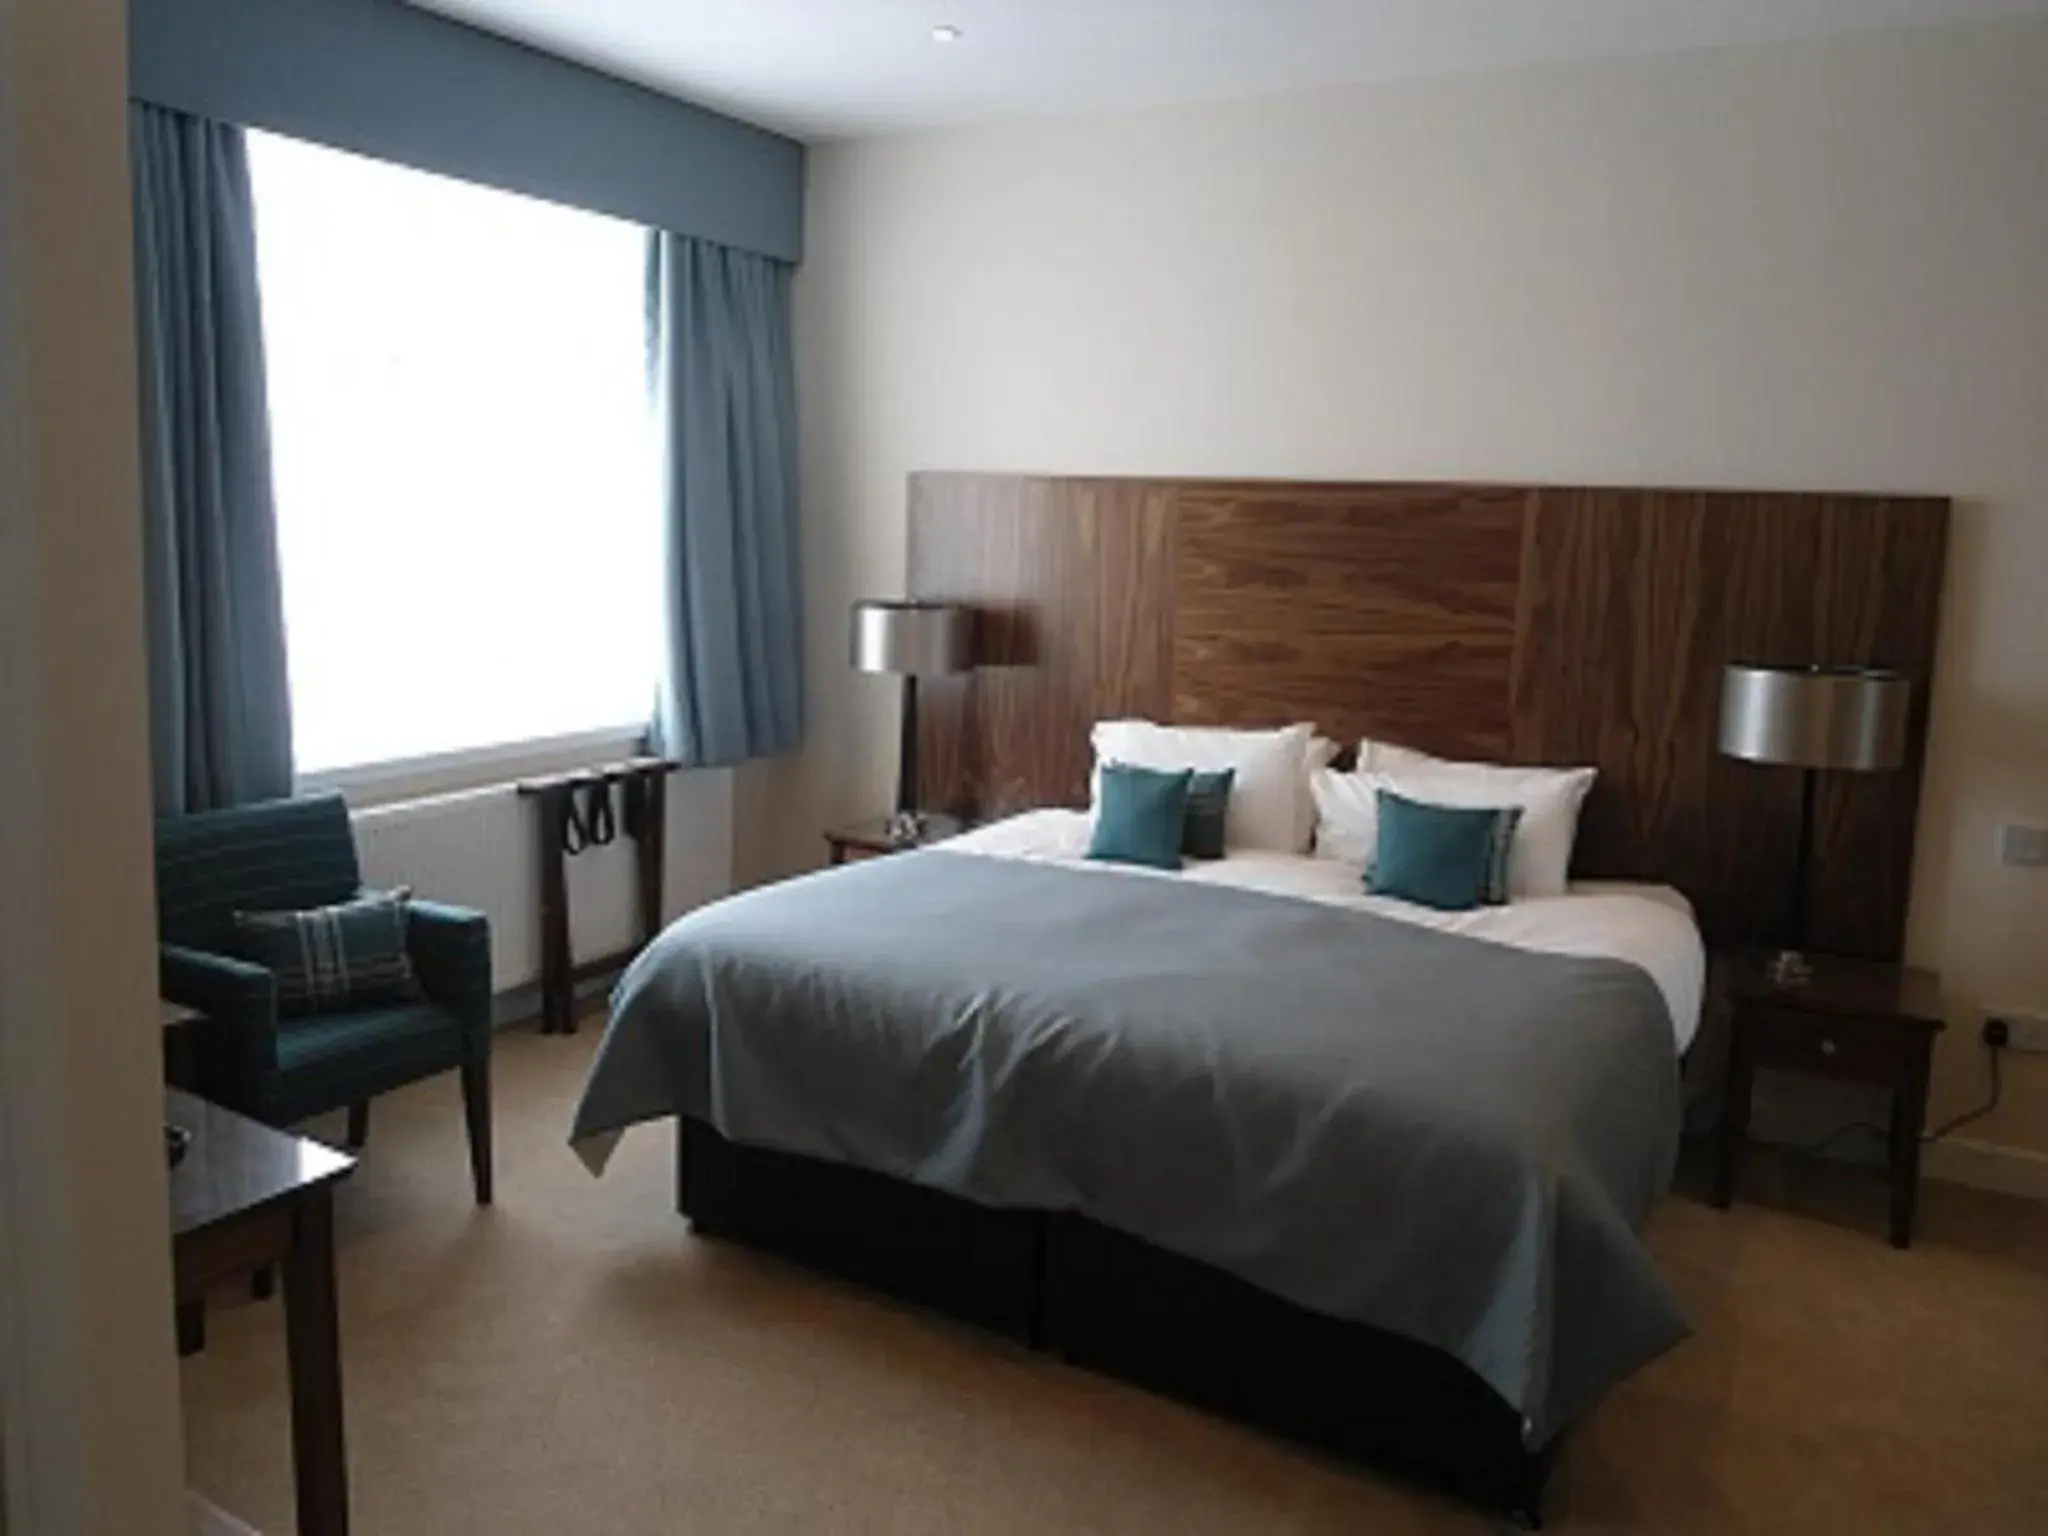 Bedroom, Bed in Links Hotel